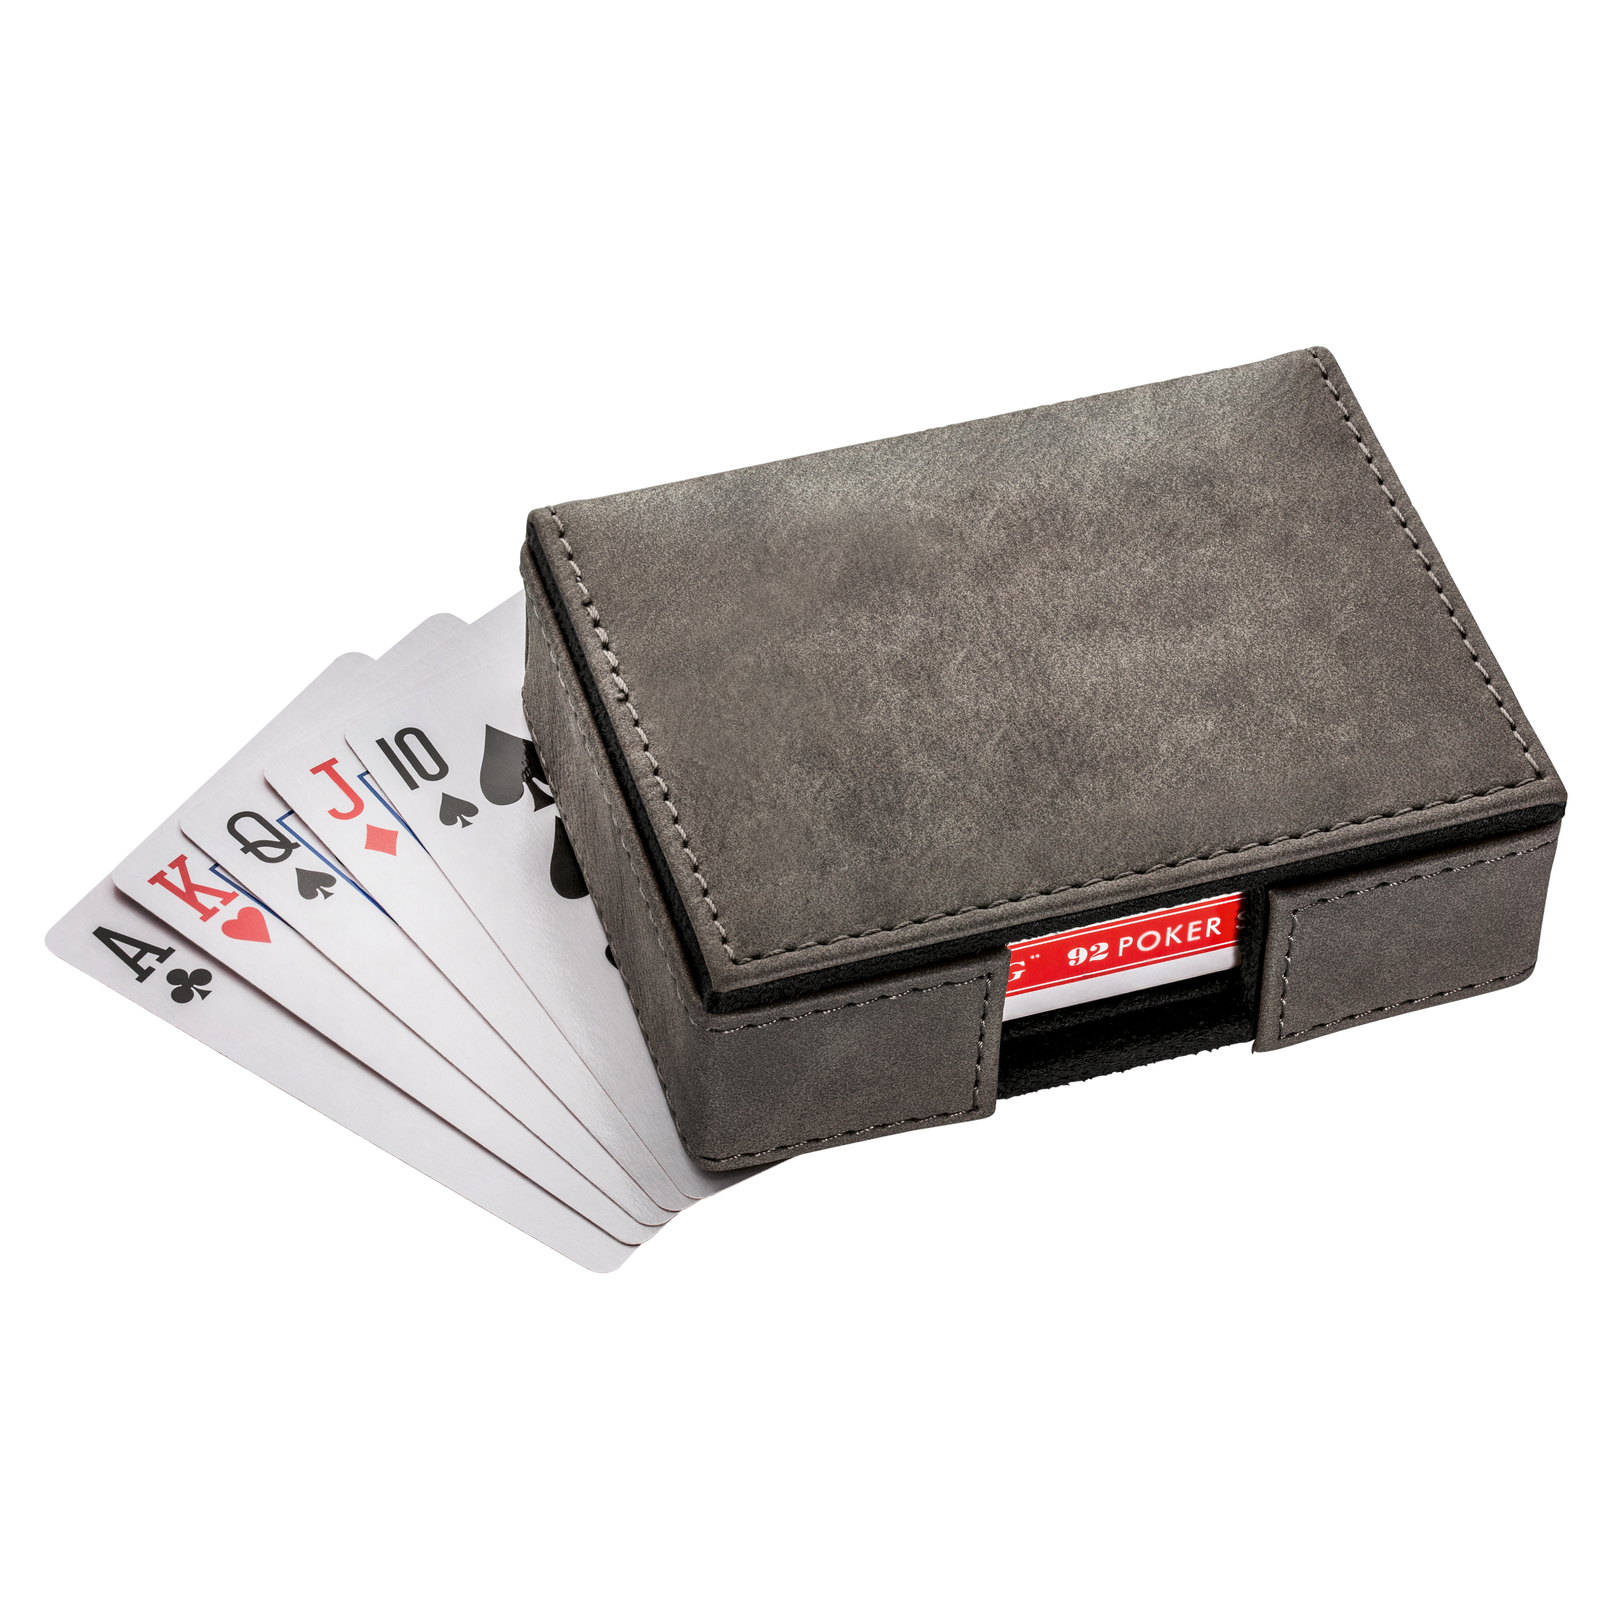 LM Spielkarten Set mit Box REFLECTS-CALABASAS BLACK grau, schwarz